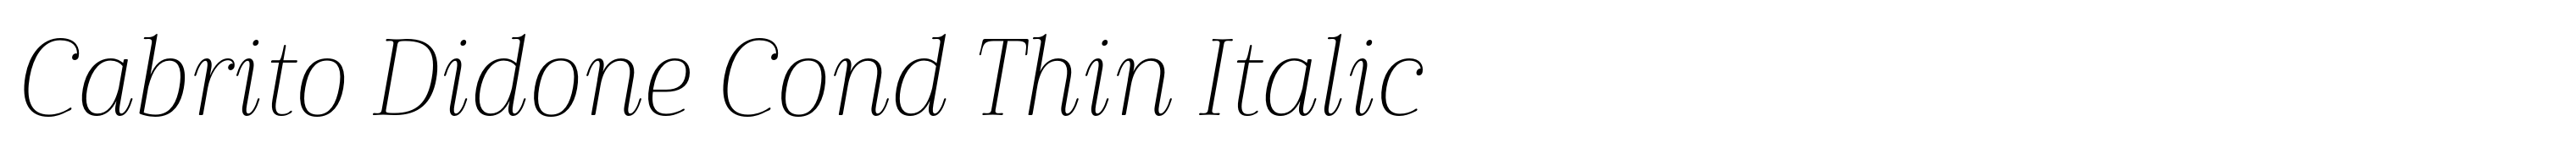 Cabrito Didone Cond Thin Italic